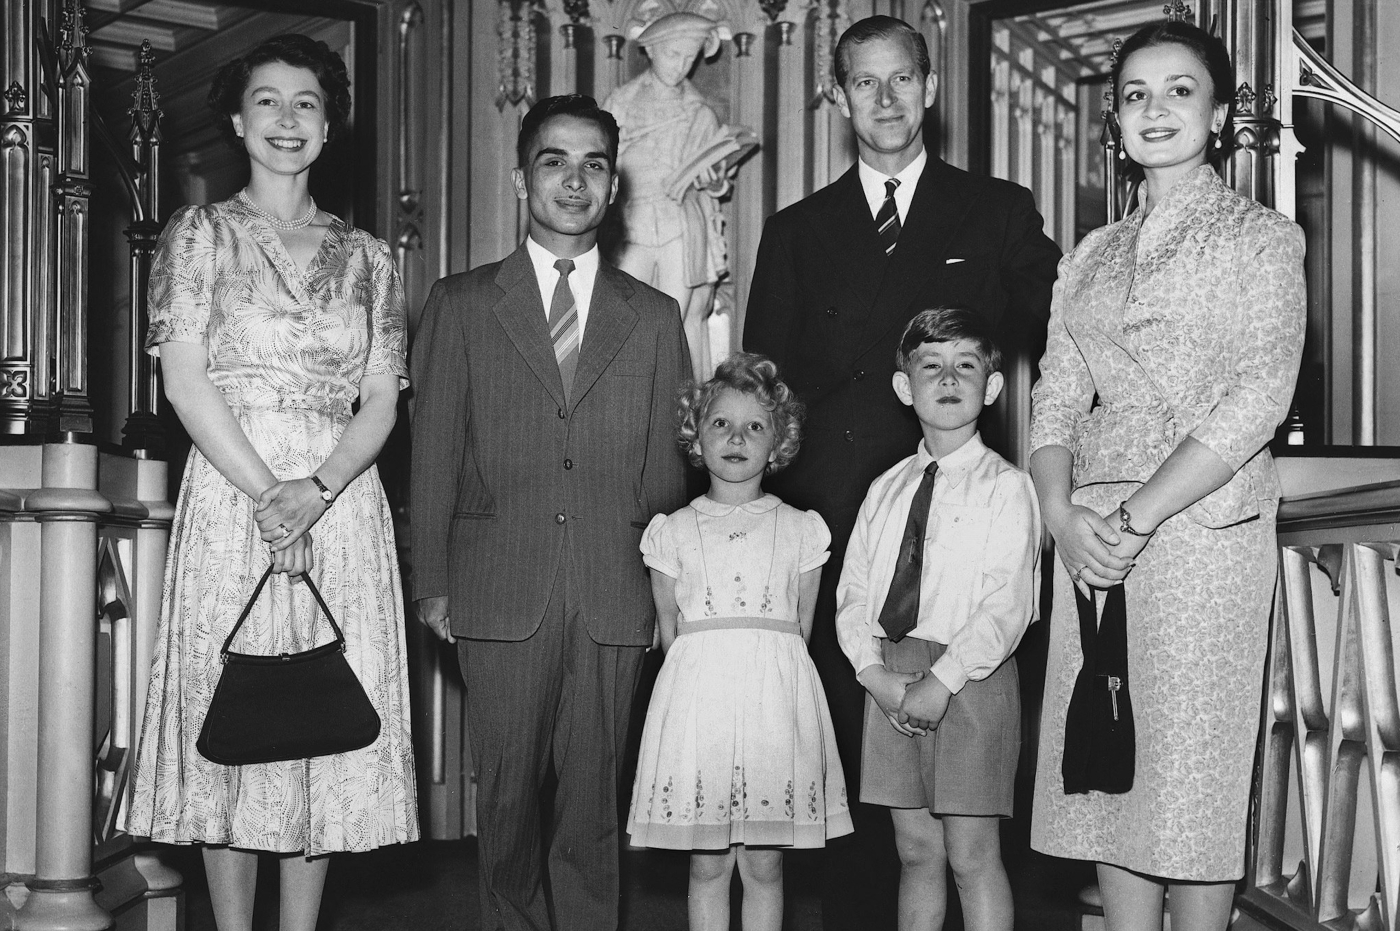 Le roi Hussein de Jordanie (deuxième en partant de la gauche) et son épouse la reine Dina (à droite) en lune de miel en Grande-Bretagne, posent avec la reine Elizabeth II (à gauche), le prince Philip (deuxième en partant de la droite), le prince Charles et la princesse Anne en juin 1955 au château de Windsor (AFP)